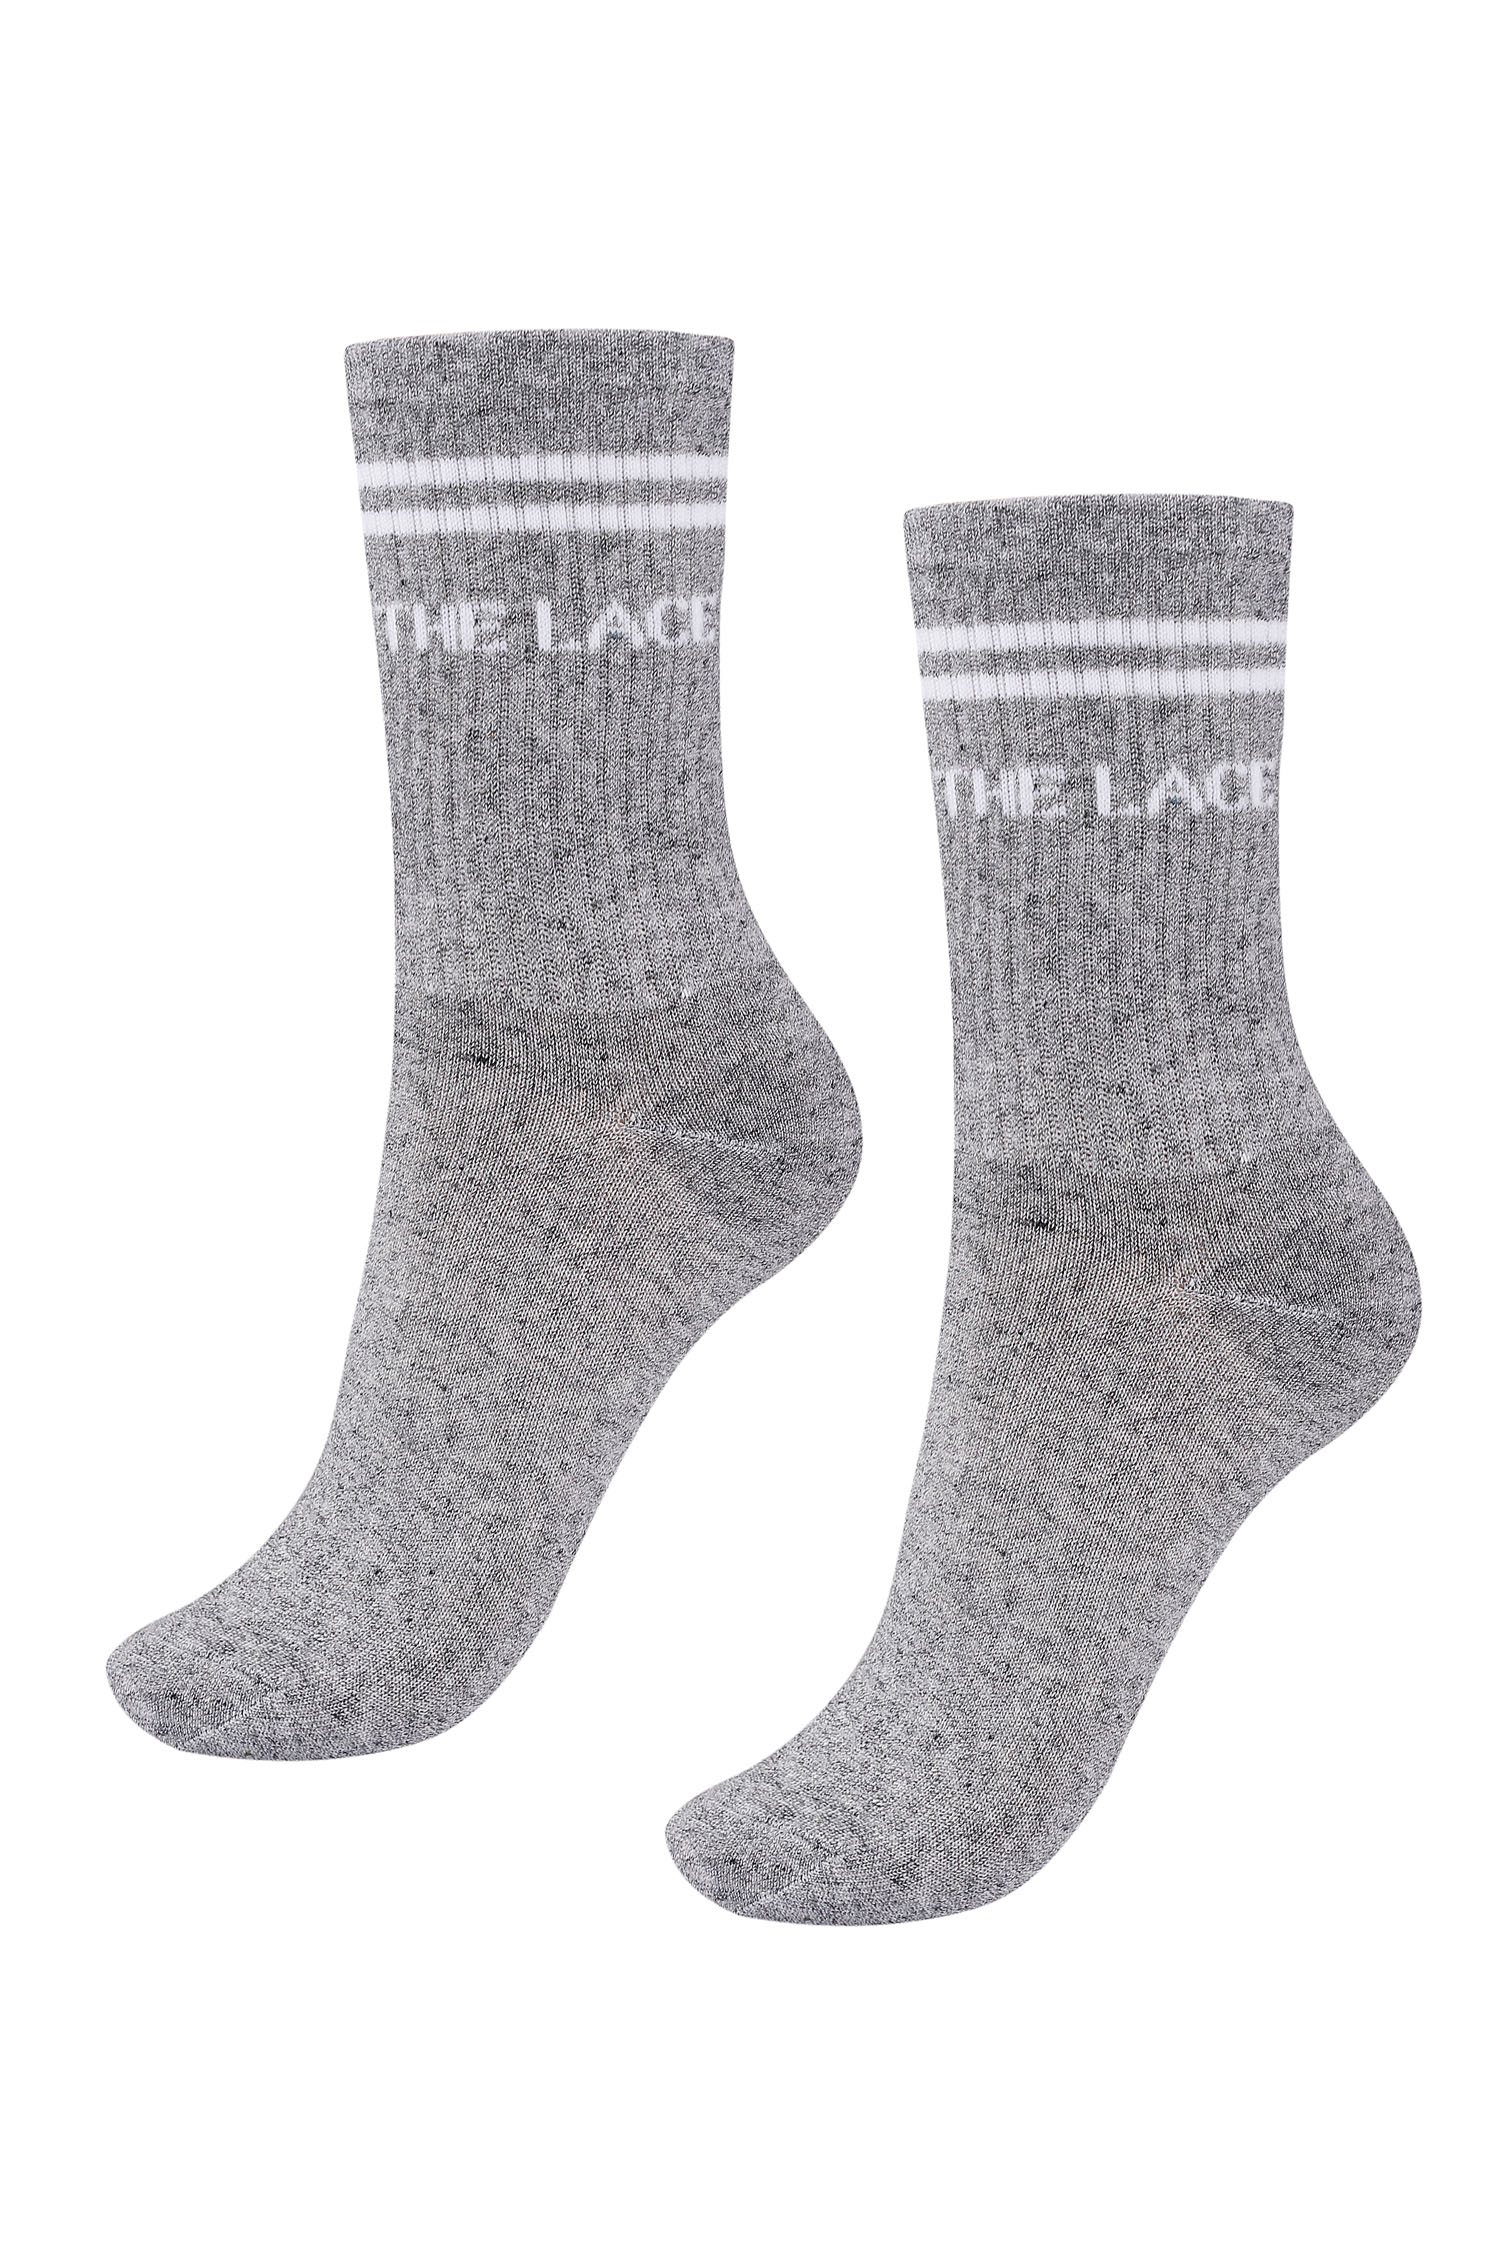 Шкарпетки сірі з логотипом - THE LACE фото 136689